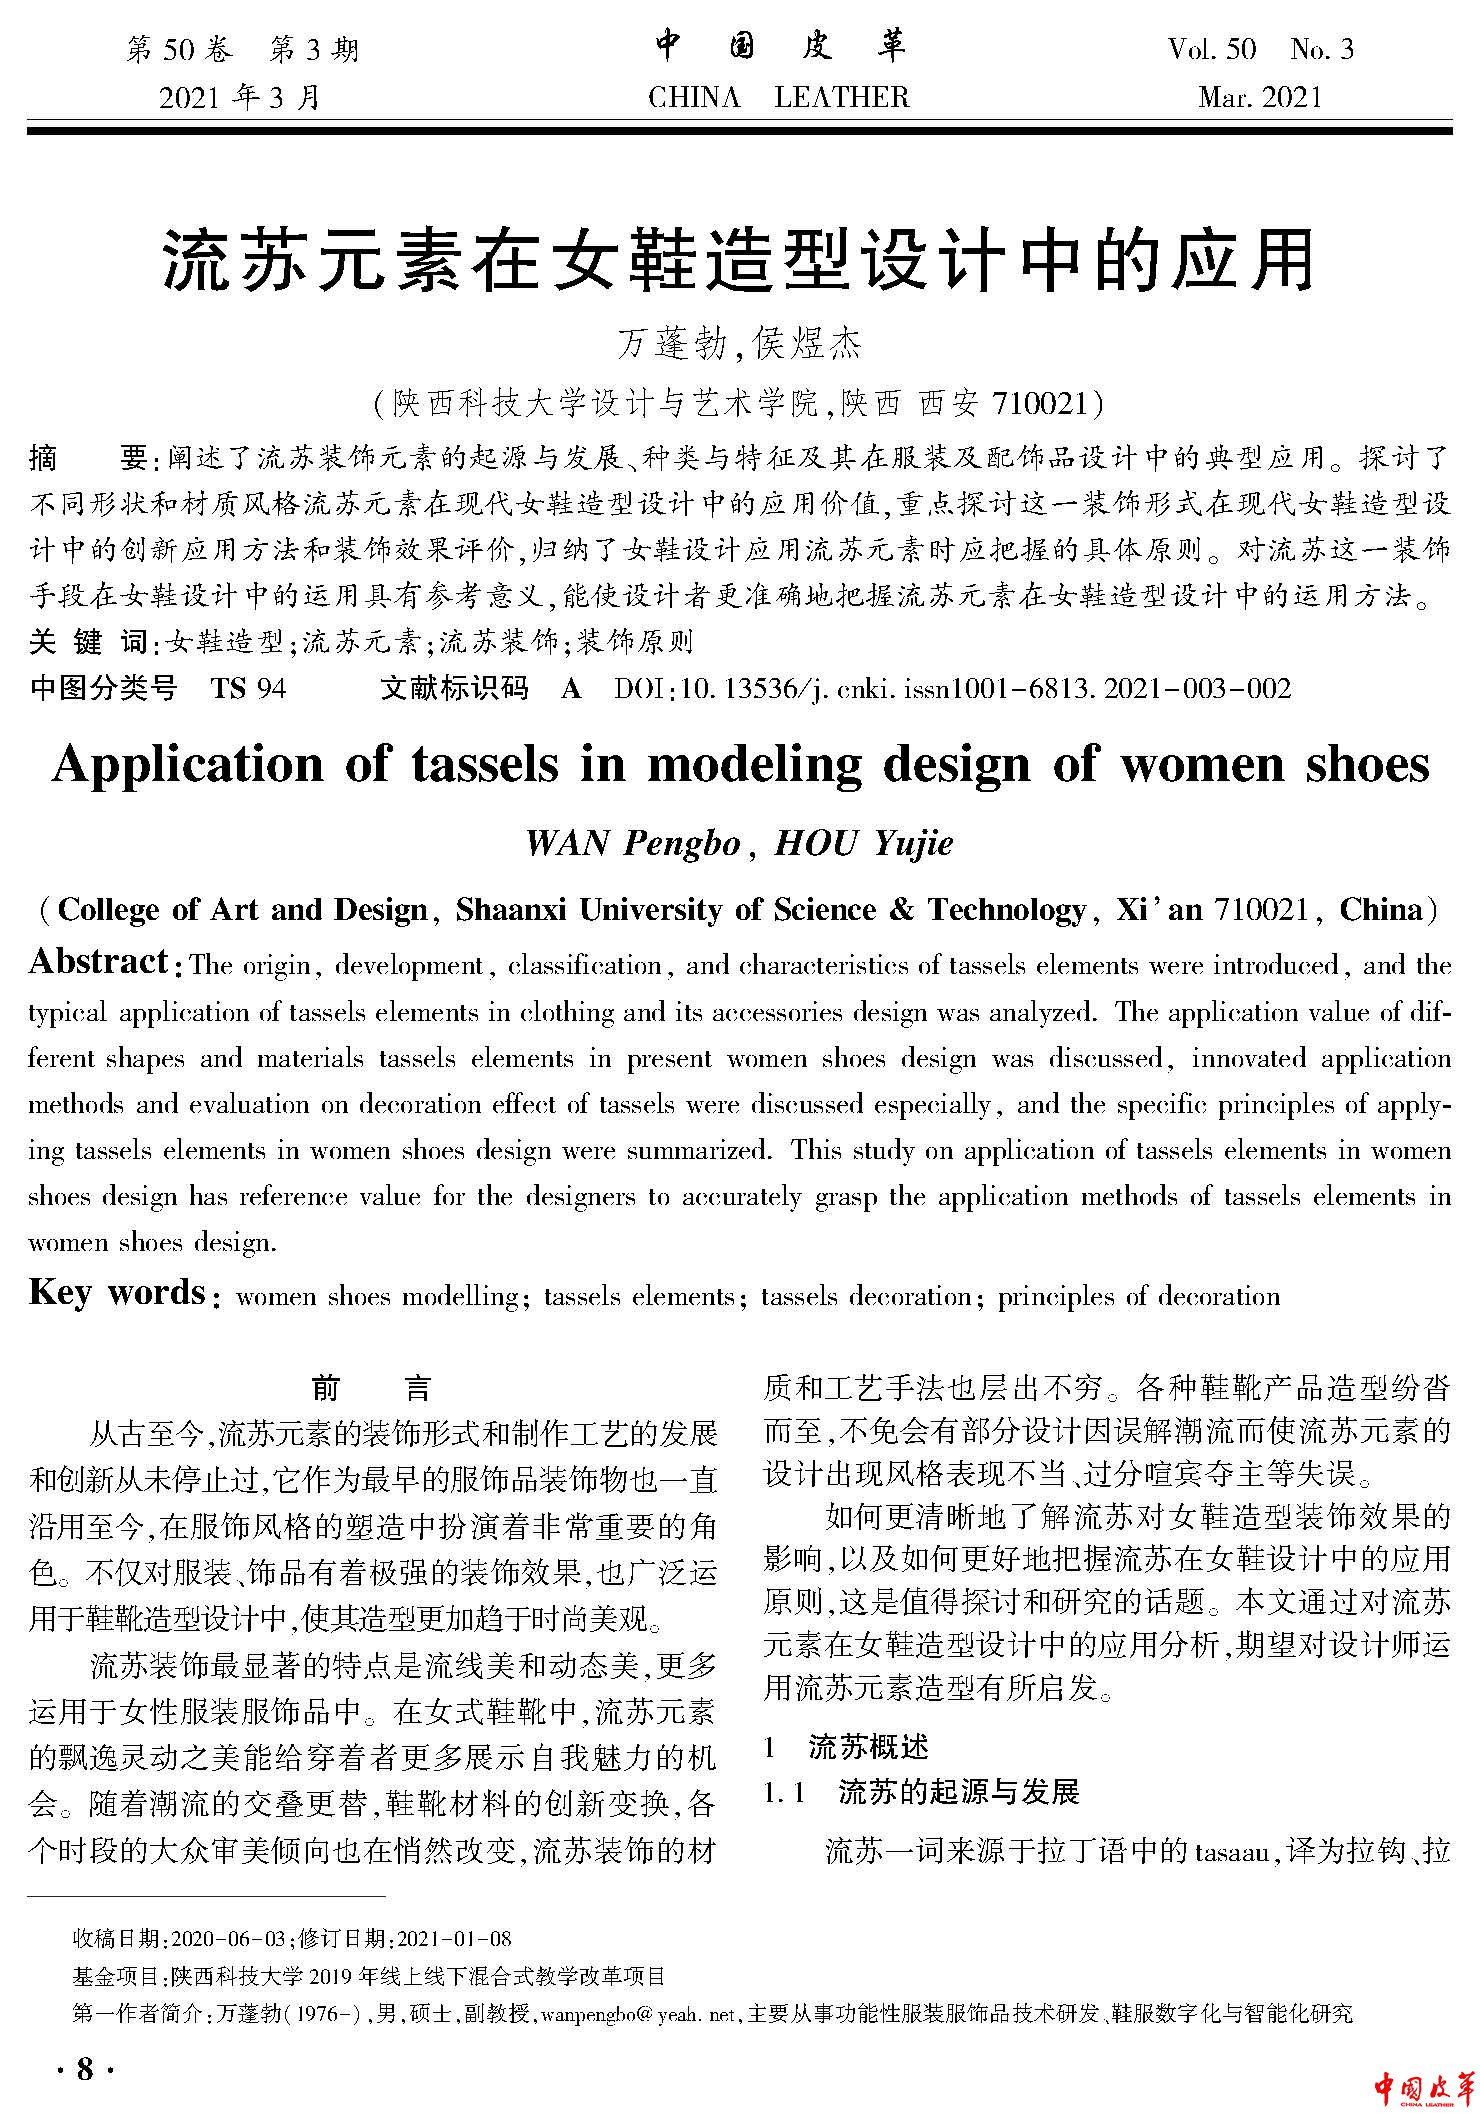 页面提取自－流苏元素在女鞋造型设计中的应用.jpg